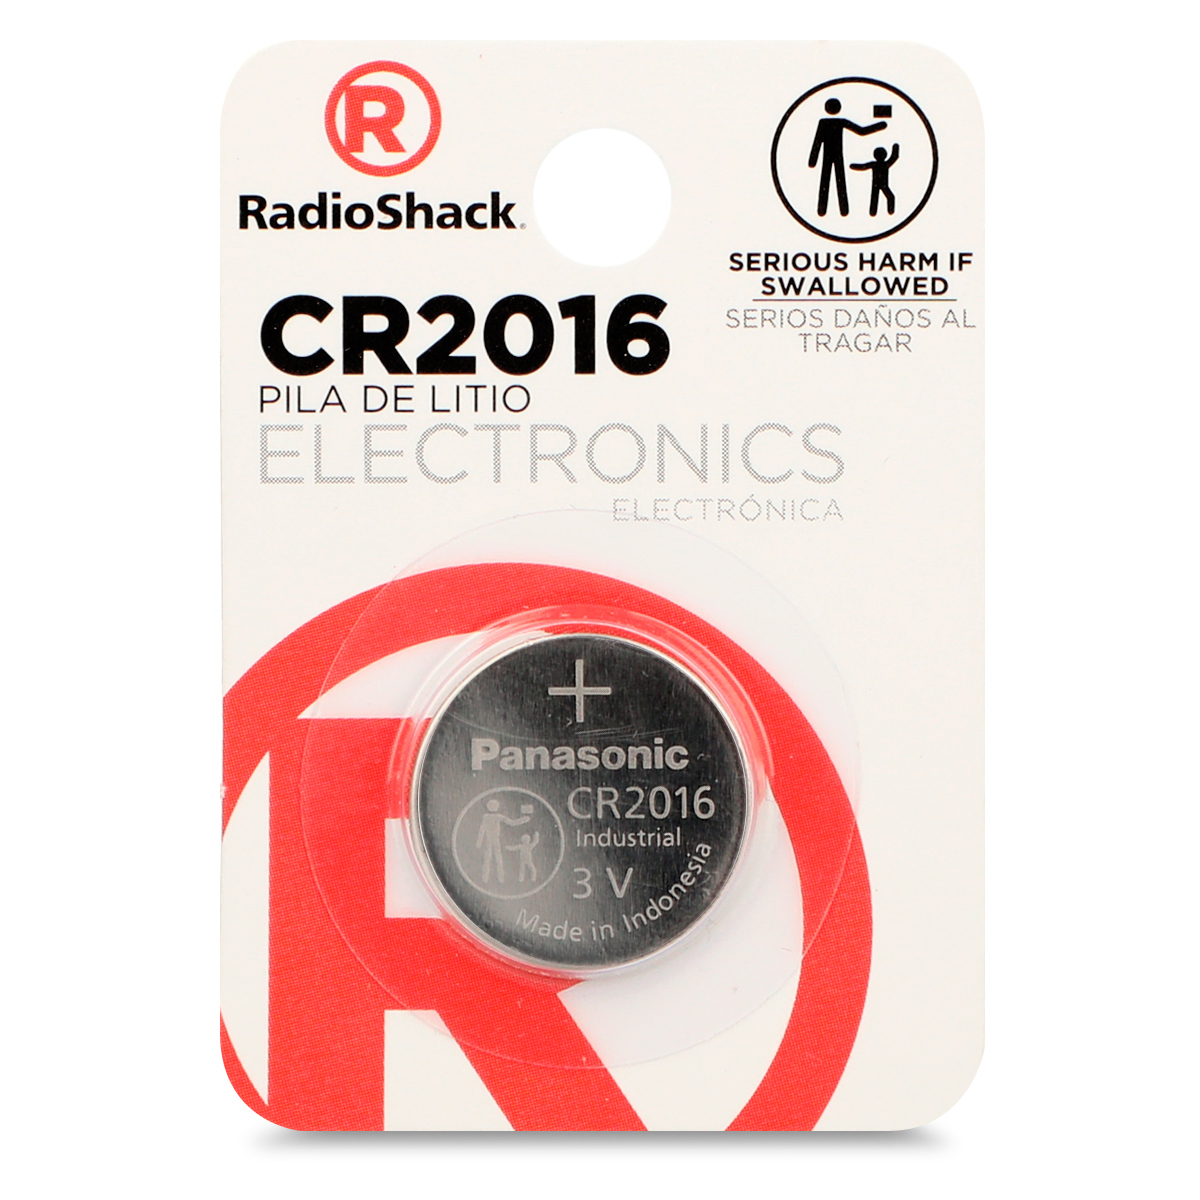 Pila Botón de Litio CR2016 RadioShack, Pilas Litio, Pilas y Baterías, Originales RadioShack, Todas, Categoría